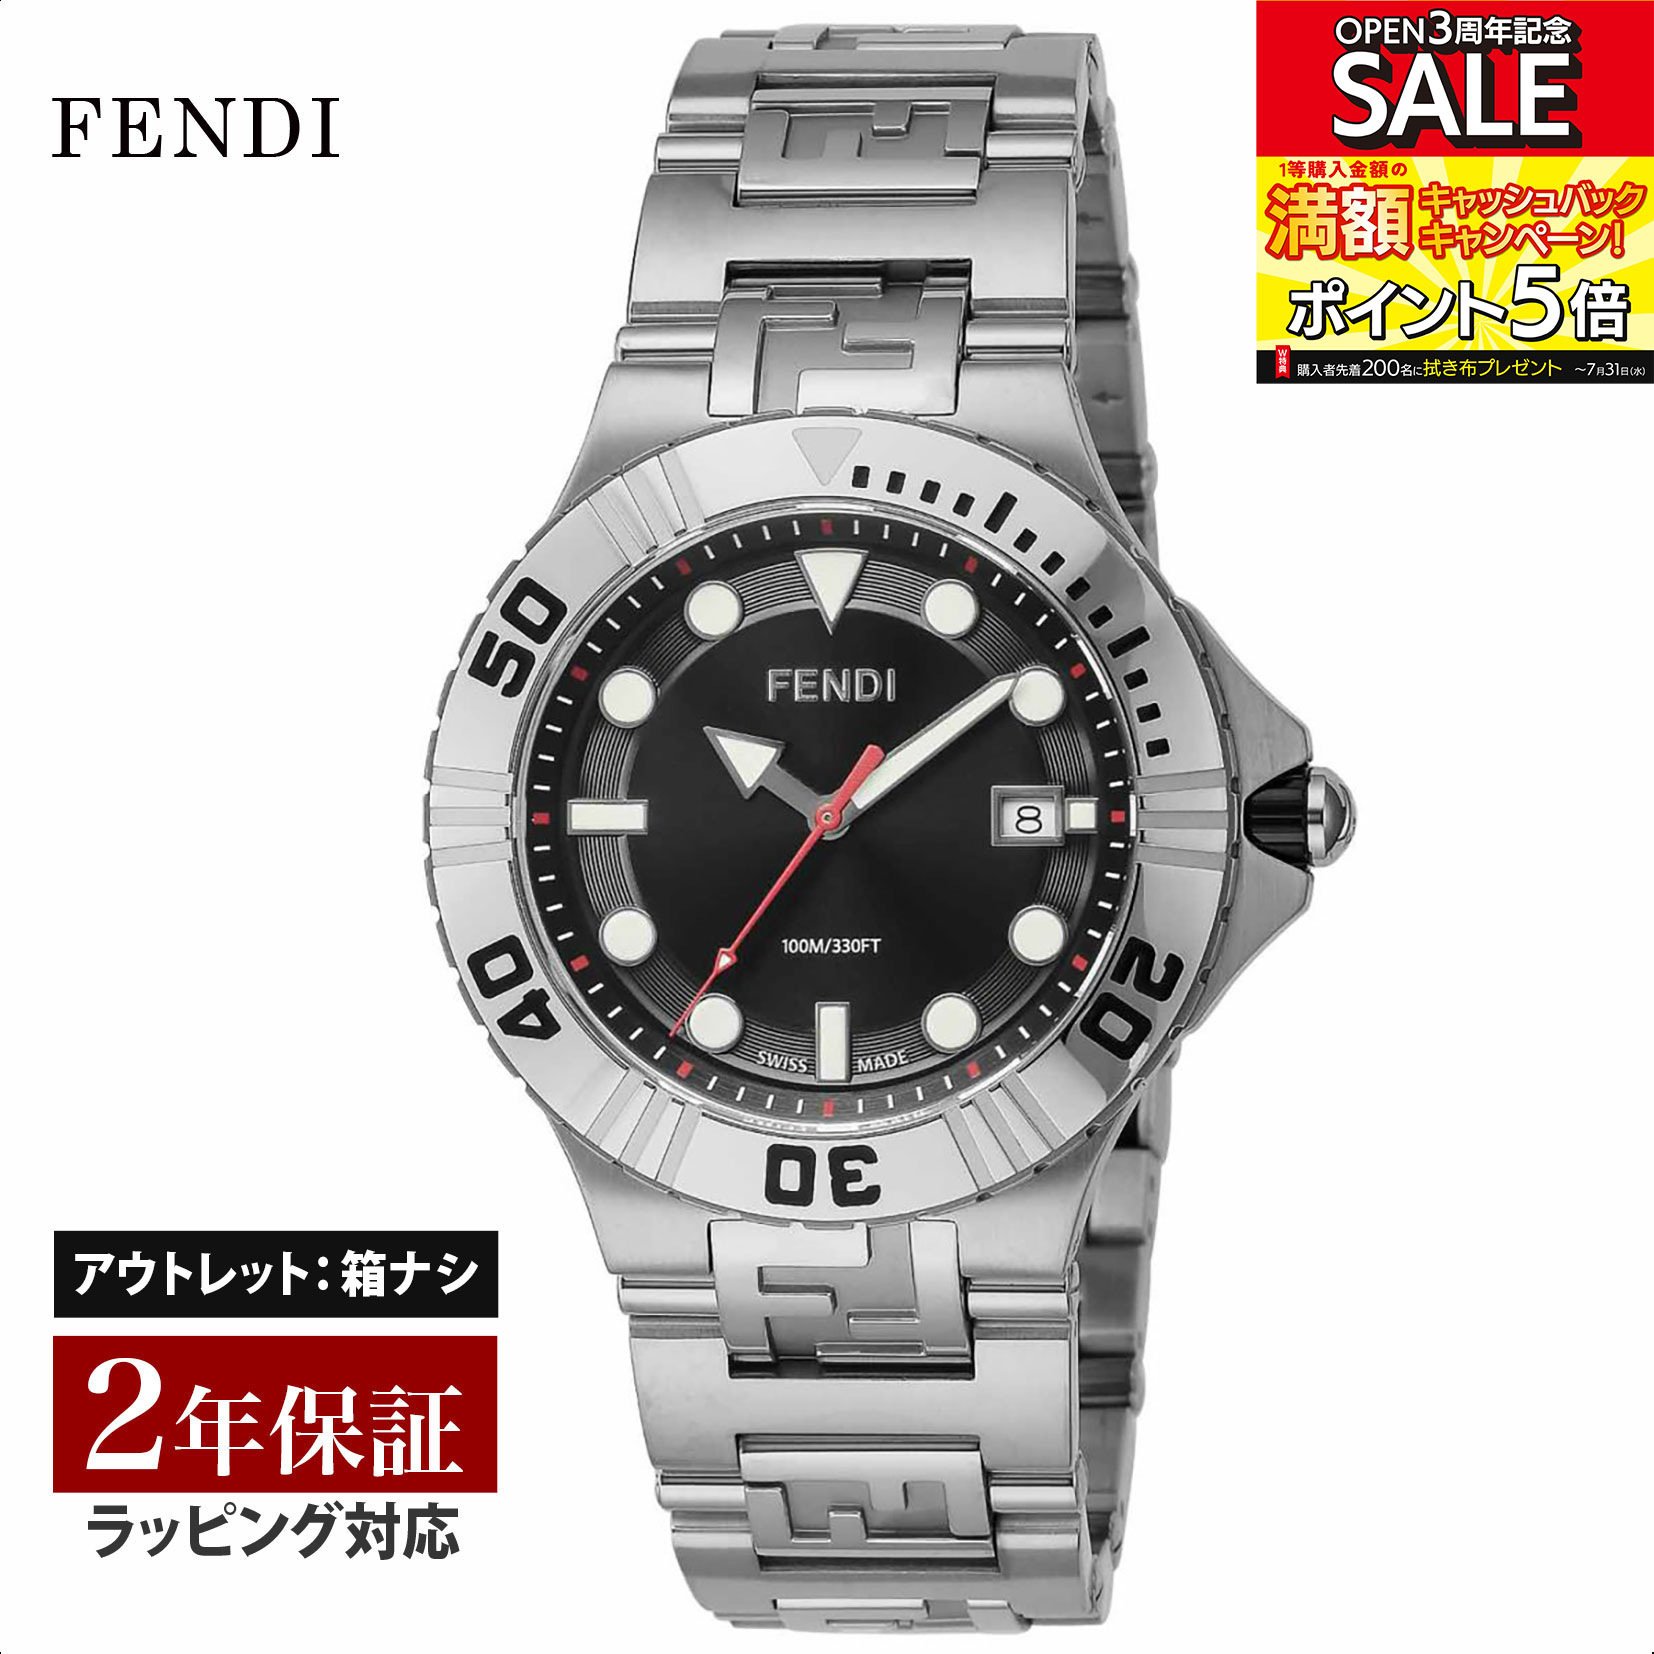 【OUTLET】 フェンディ FENDI メンズ 時計 Nautico クォーツ ブラック F108100101 時計 腕時計 高級腕時計 ブランド 【クリアランス】